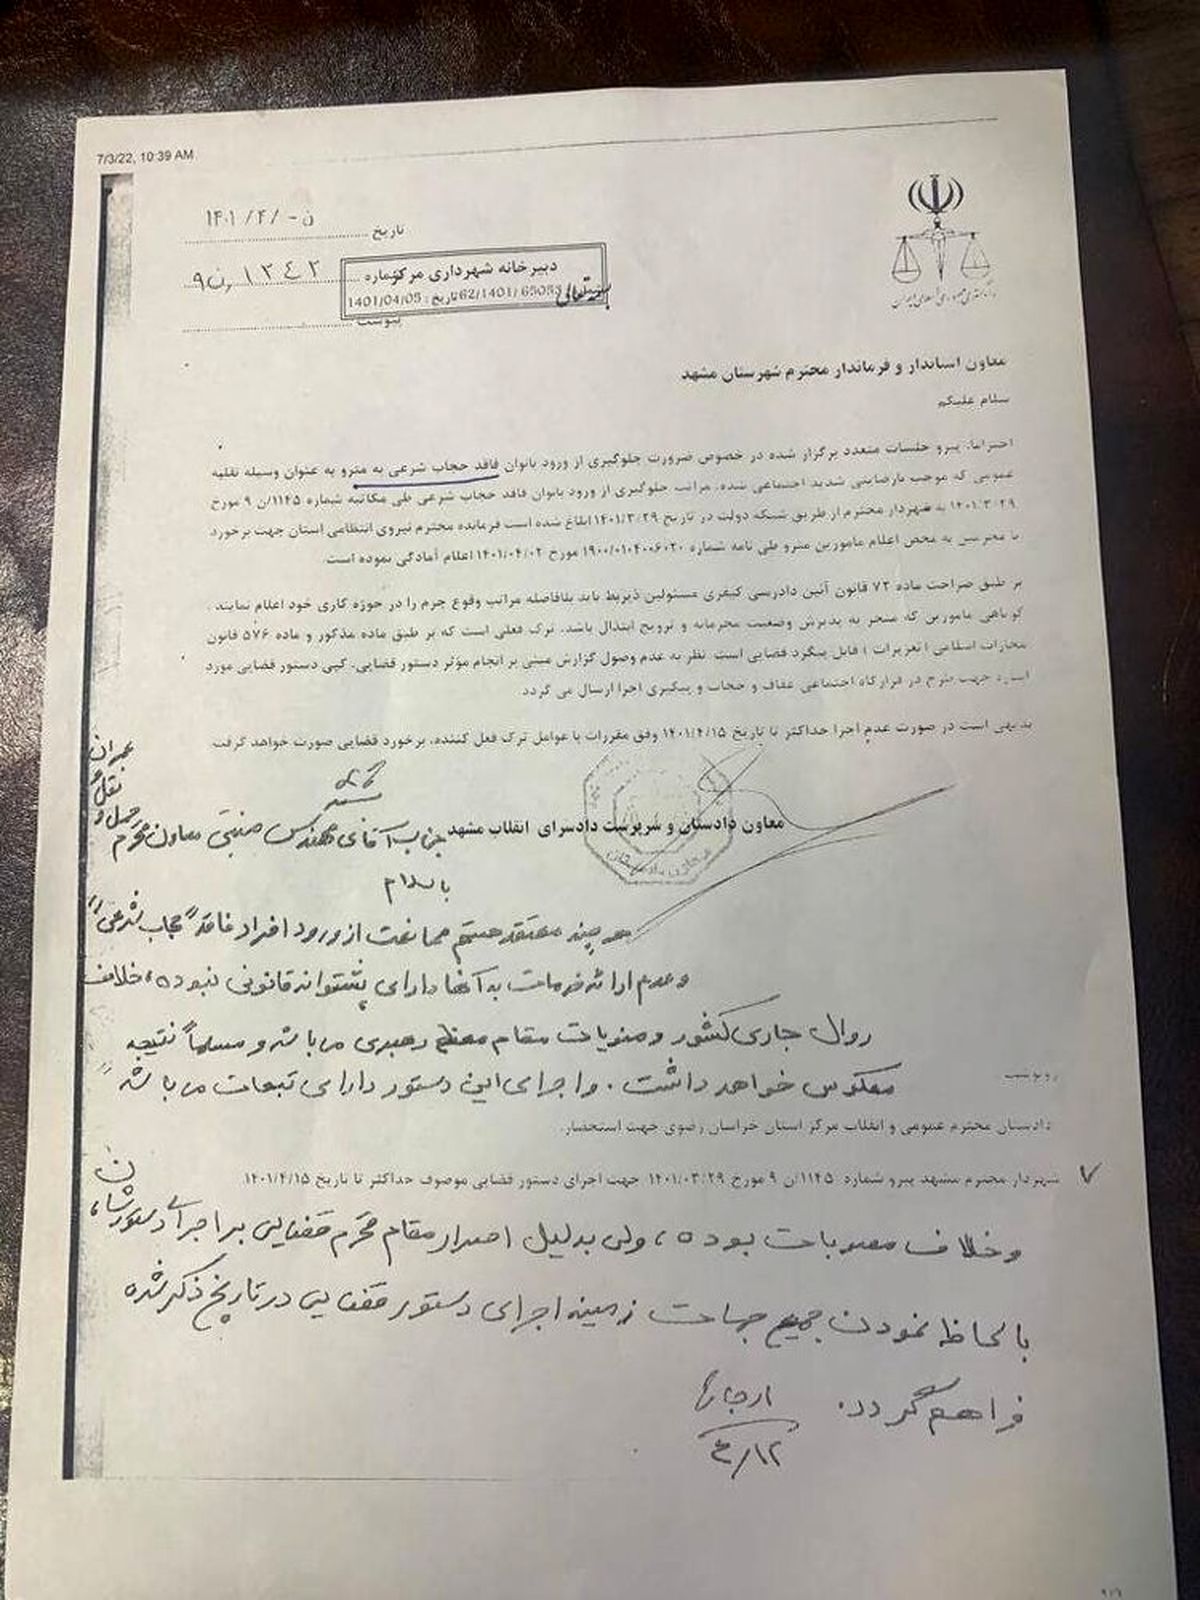 شهردار مشهد : دستور دادستان مشهد درباره ممنوعیت ورود به مترو بانوان بدحجاب ، خلاف قانون و سخنان رهبری است اصرار کردند ، ابلاغ کردم